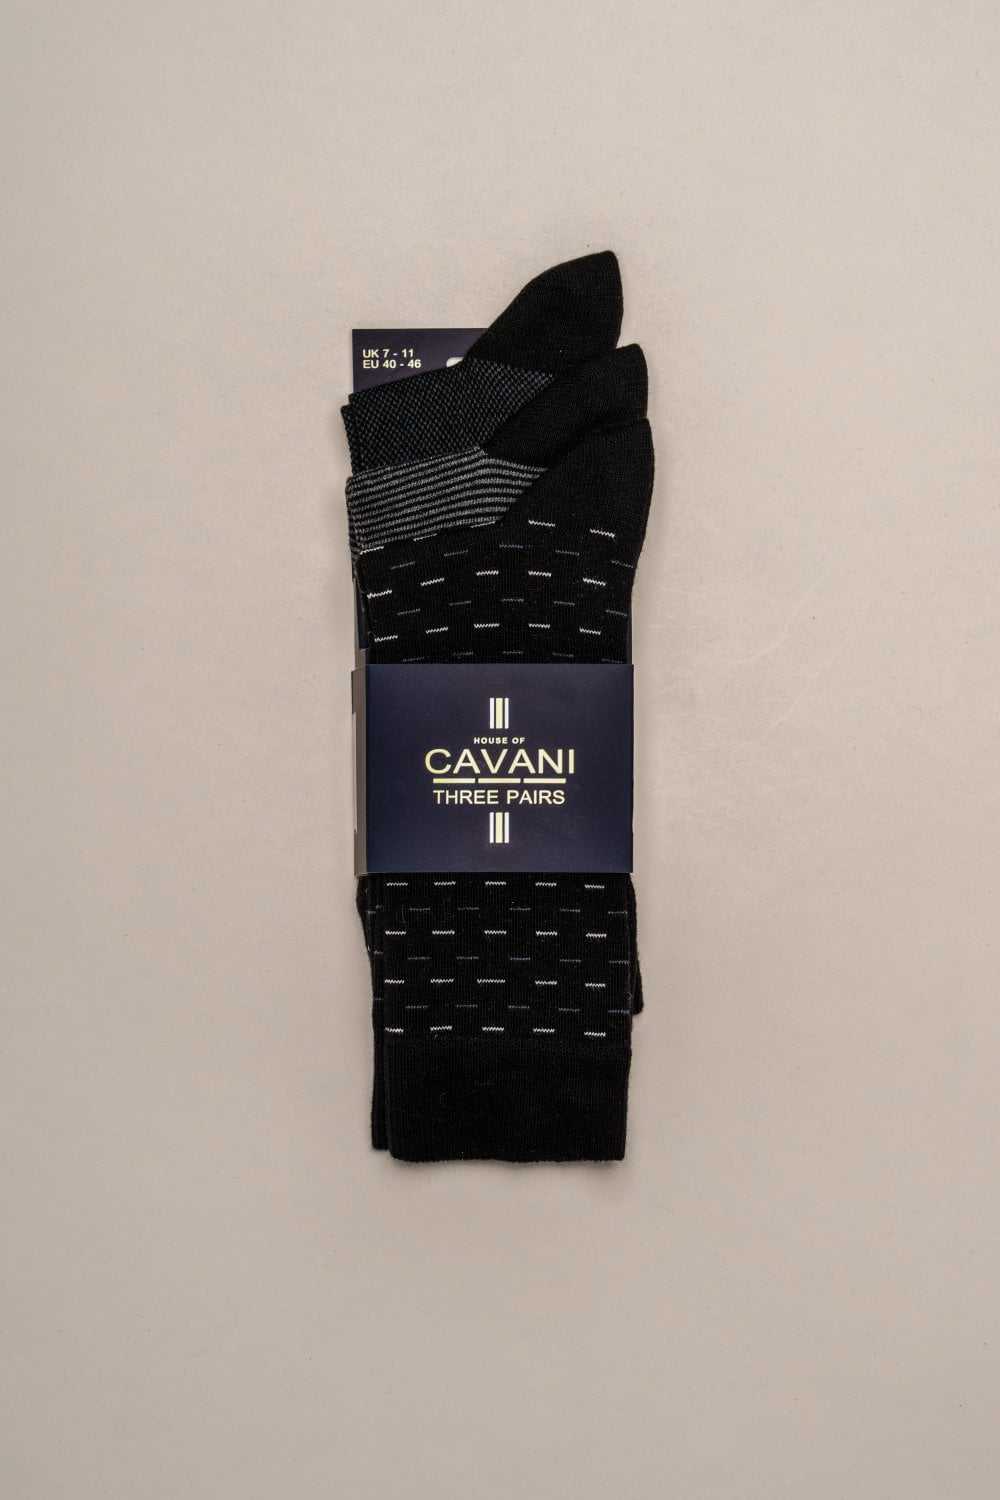 Cavani Tarossa Socken 3er-Pack